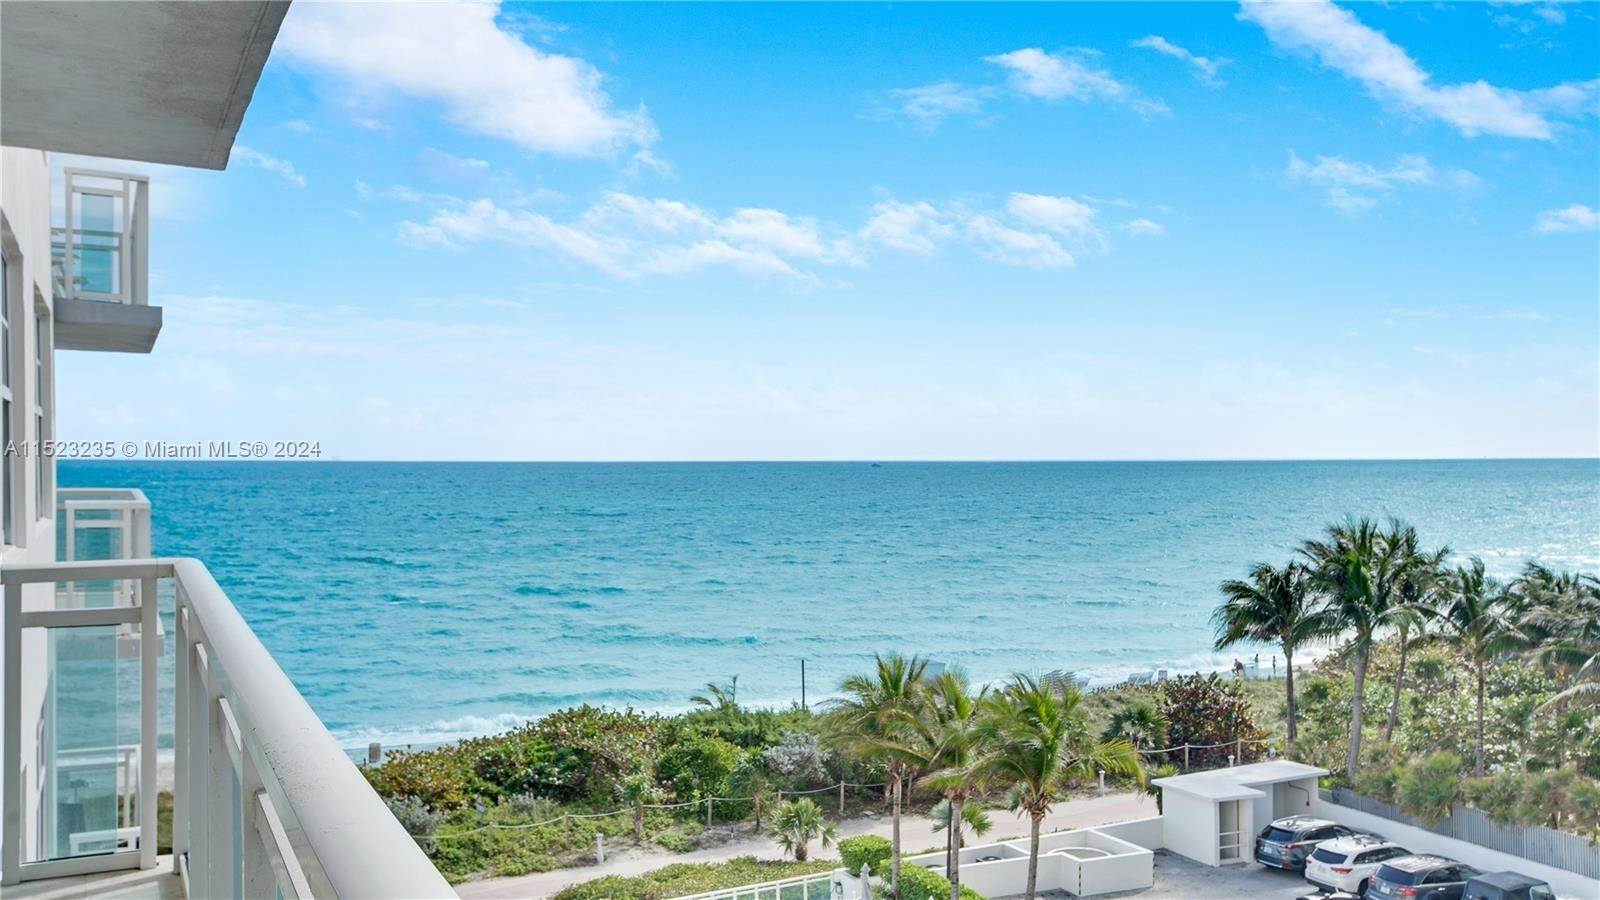 Andelslägenhet för Försäljning vid Atlantic Heights, Miami Beach, FL 33141